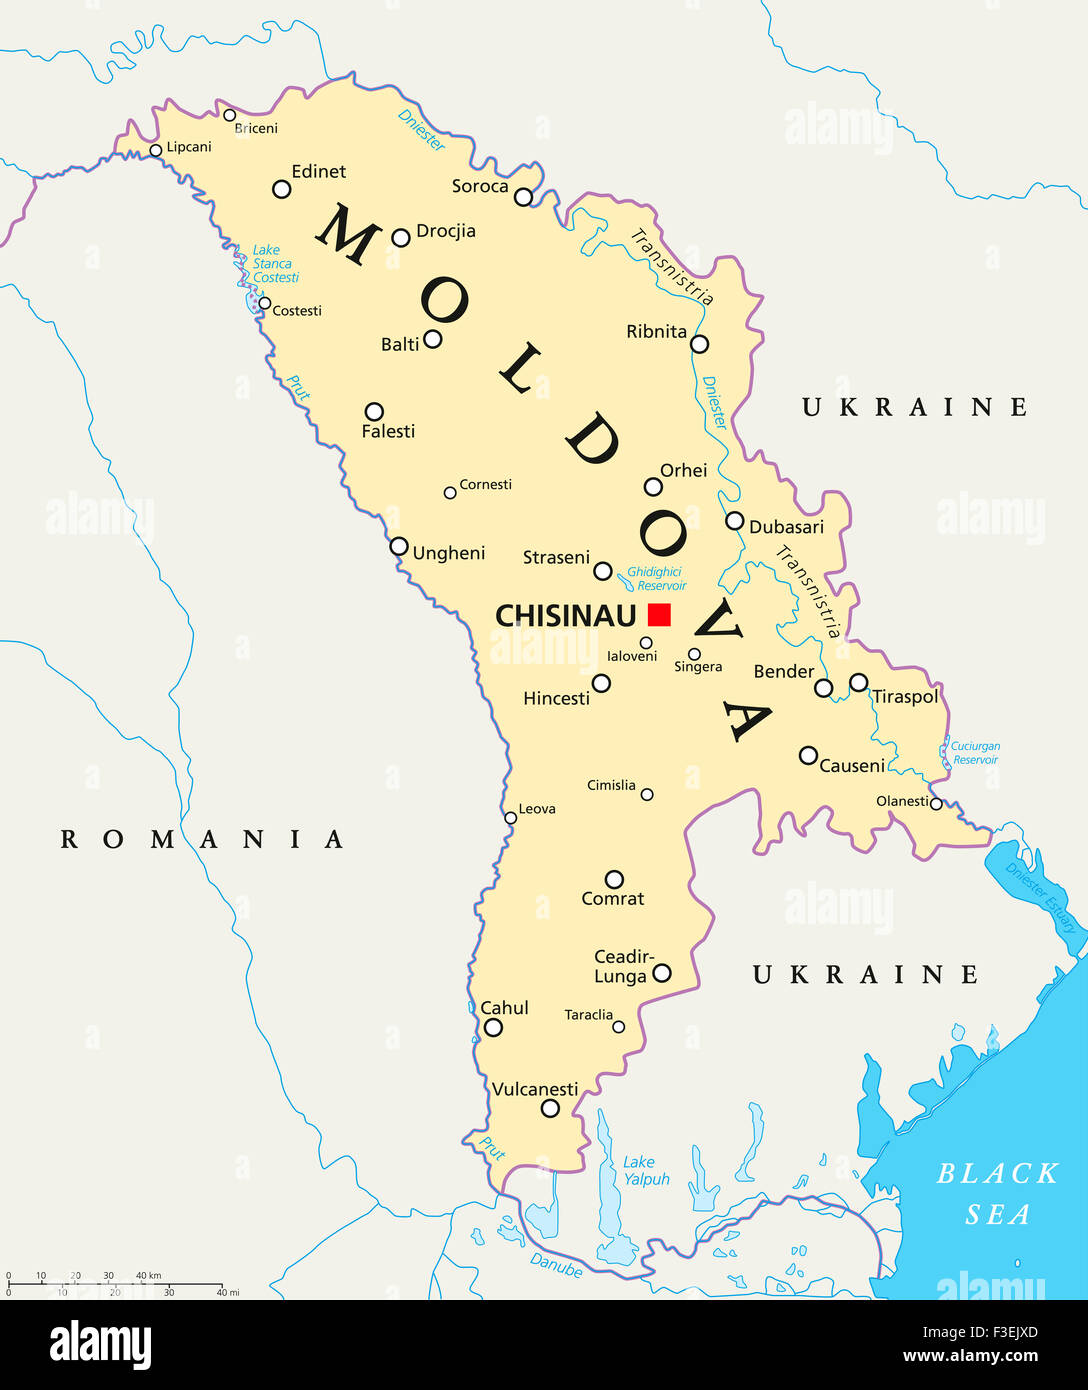 Republik Moldau politische Karte mit Hauptstadt Chisinau, Landesgrenzen, wichtige Städte, Flüsse und Seen. Englische Beschriftung und Skalierung. Stockfoto